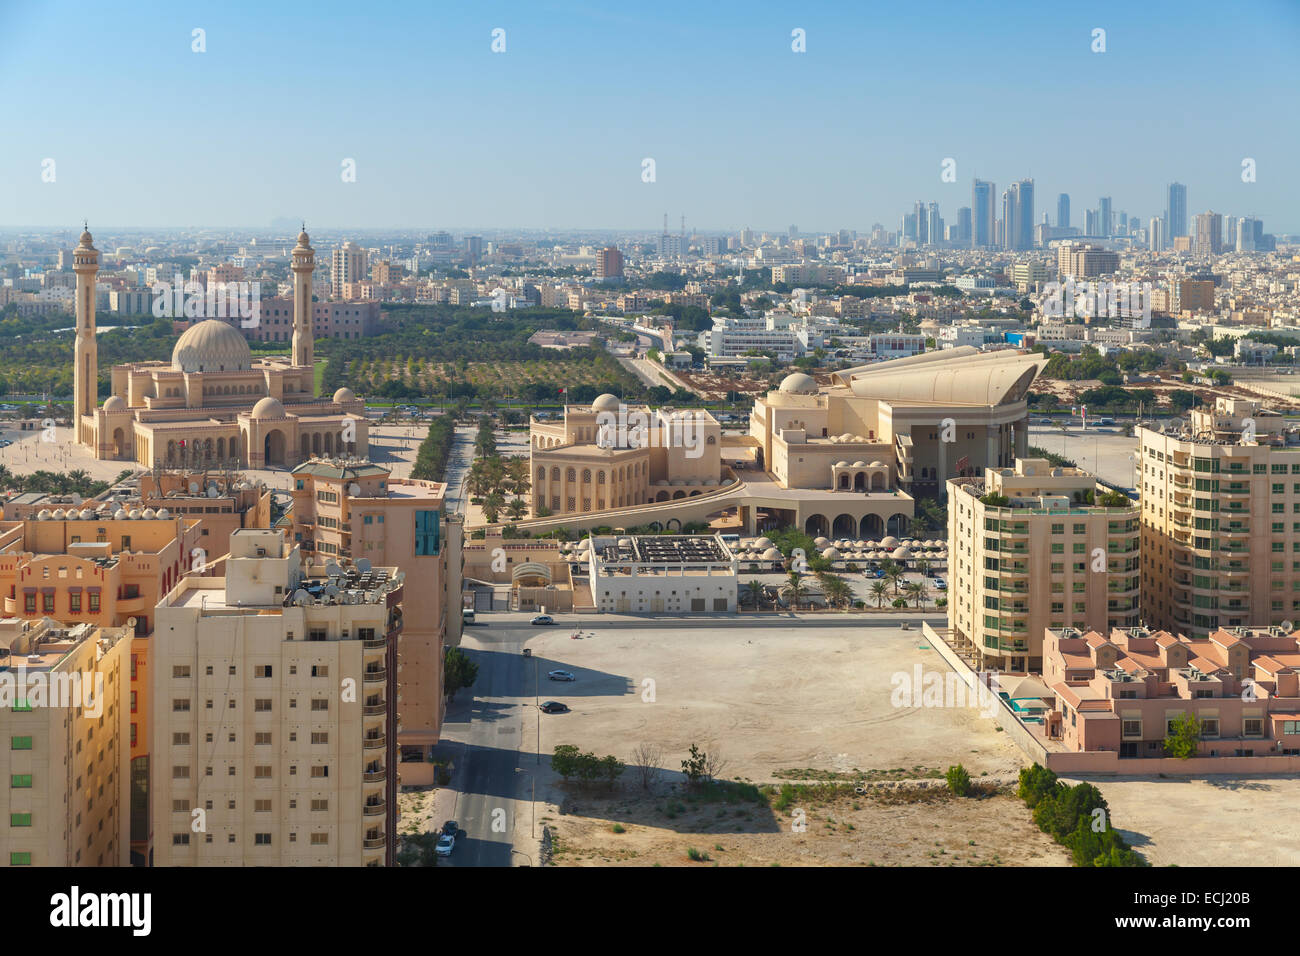 Vue d'oiseau de la ville de Manama, Bahreïn. Avec les toits de bâtiments anciens et modernes sur l'horizon Banque D'Images